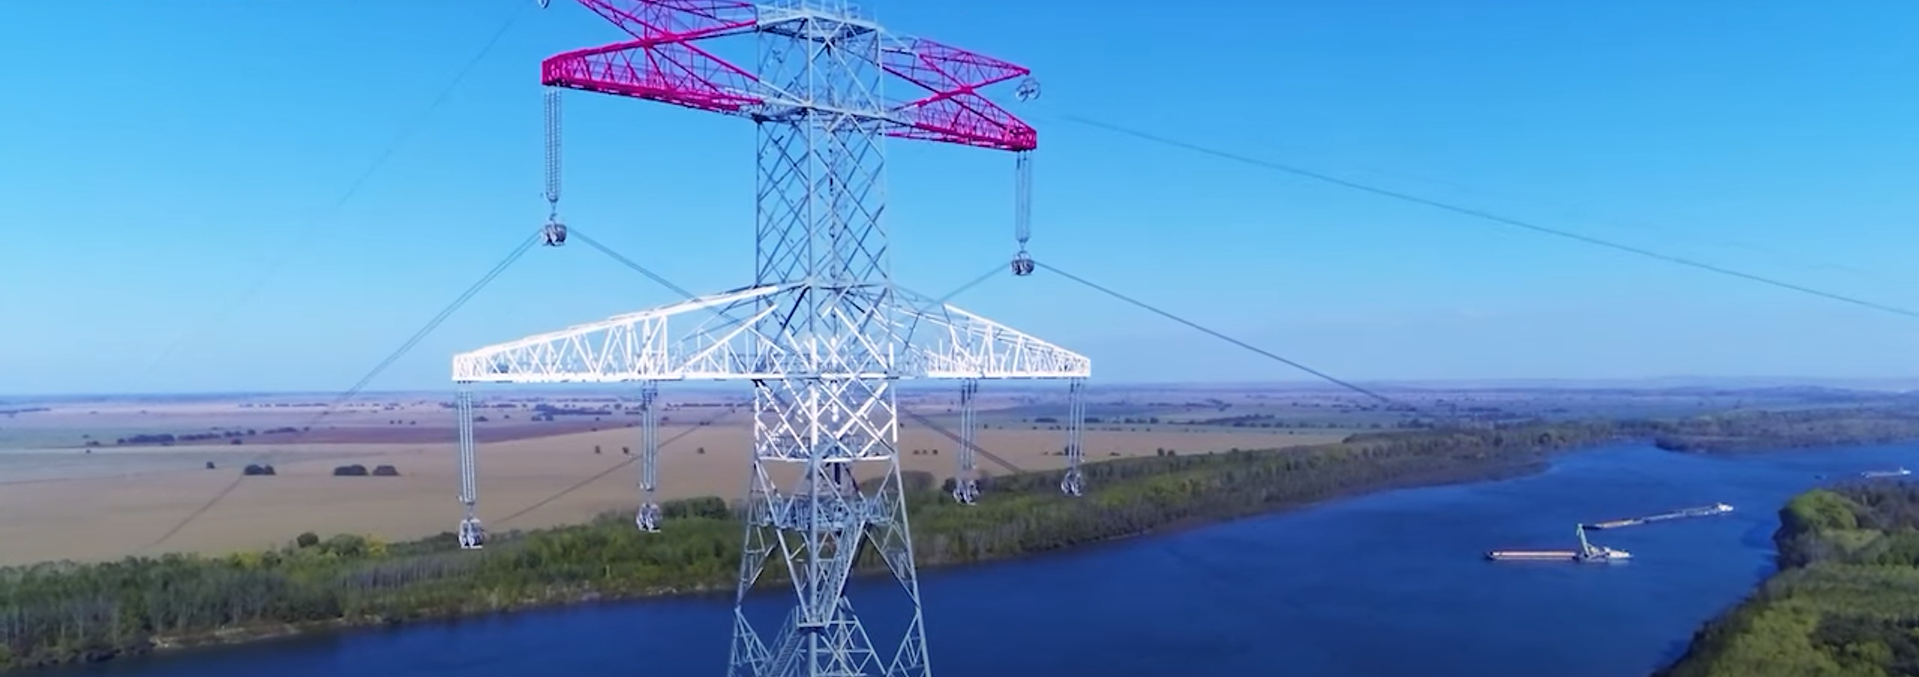 Finalizarea traversării Dunării în cadrul lucrării de construire a Liniei Electrice Aeriene Cernavodă - StâlpuFinalizarea traversării Dunării în cadrul lucrării de construire a Liniei Electrice Aeriene Cernavodă - Stâlpu